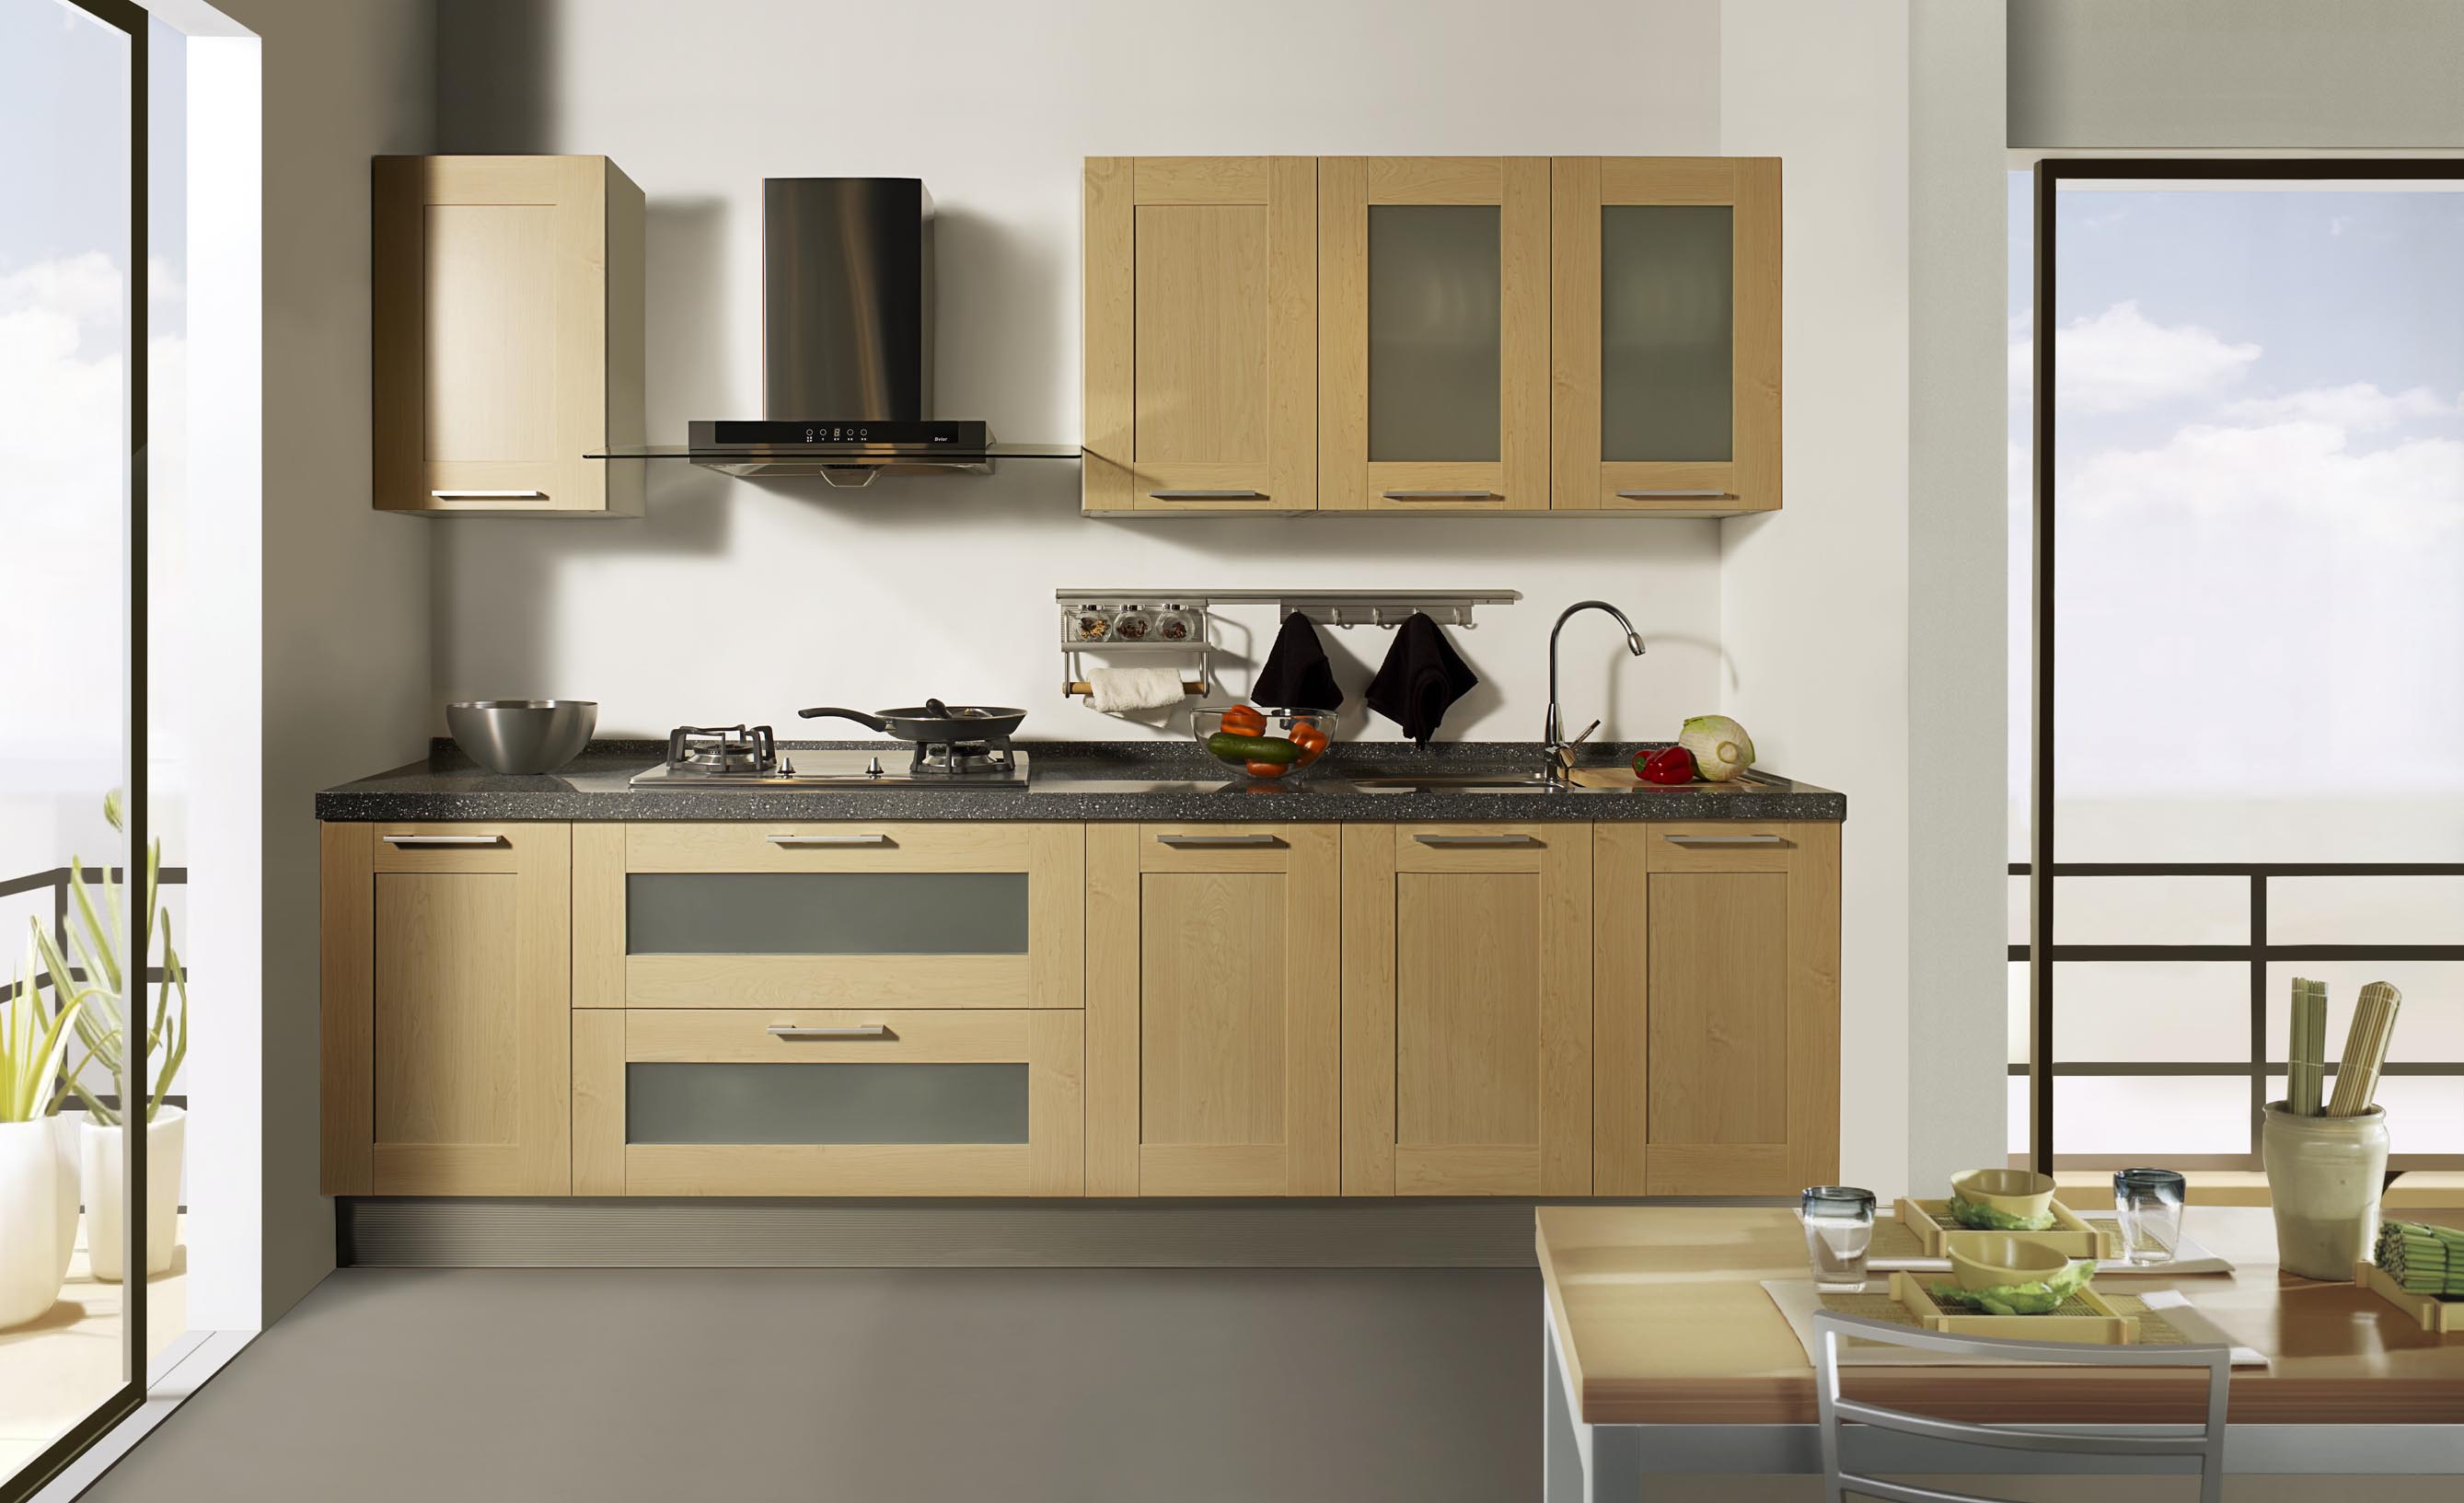 Kitchen Cabinet Designs For Small Kitchens In Nigeria Amazing Kitchen Interior